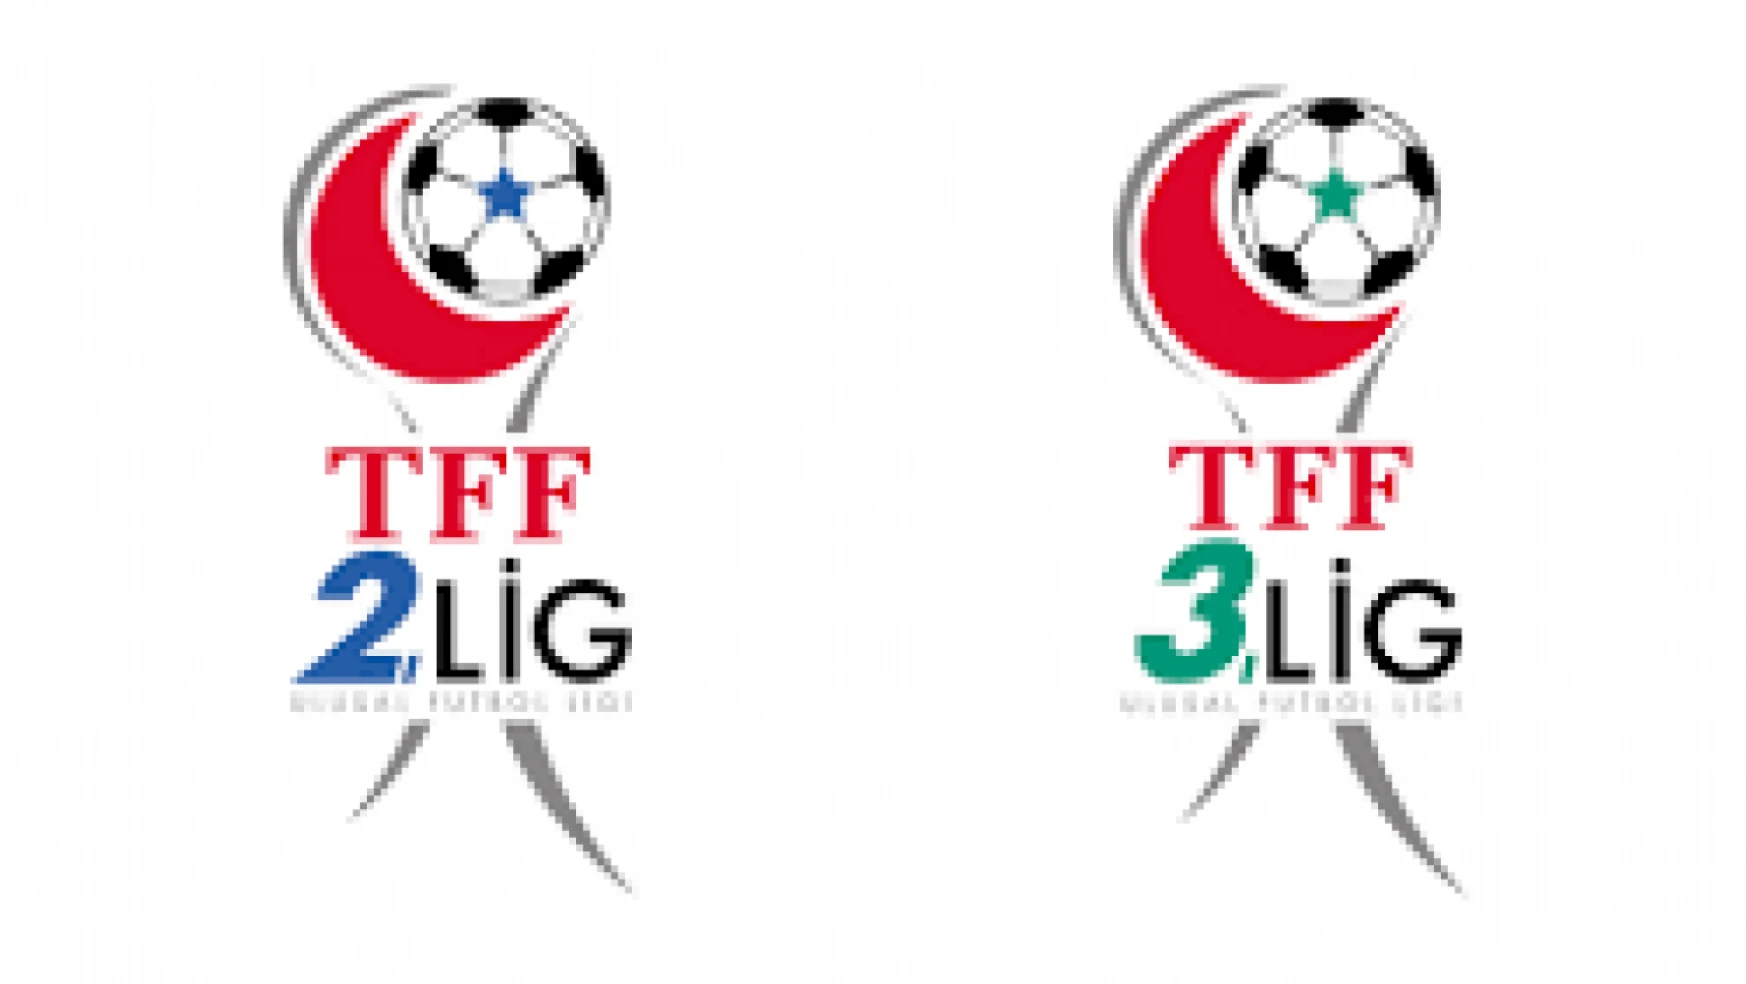 TFF 2. ve 3. Lig maçları federasyonun YouTube kanalından canlı yayımlanacak